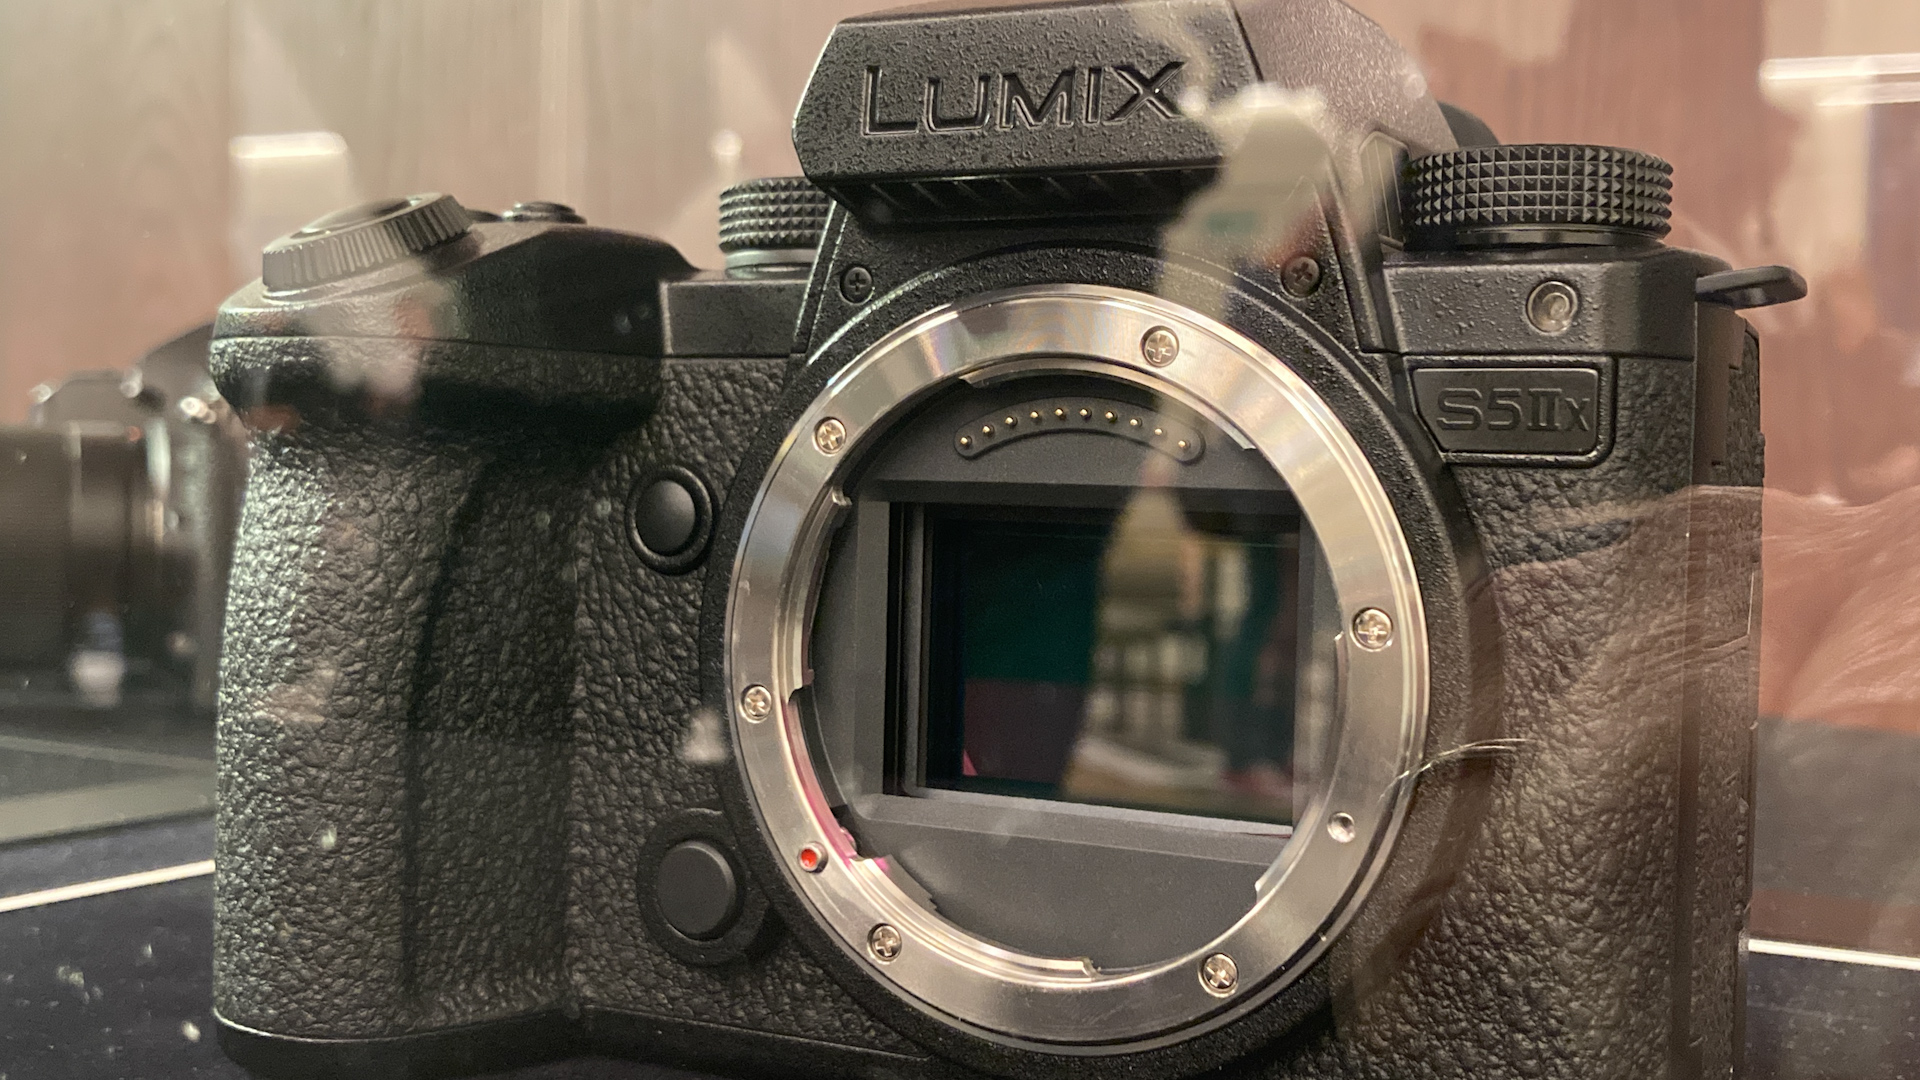  Panasonic LUMIX S5 II Mirrorless Camera with Lumix S